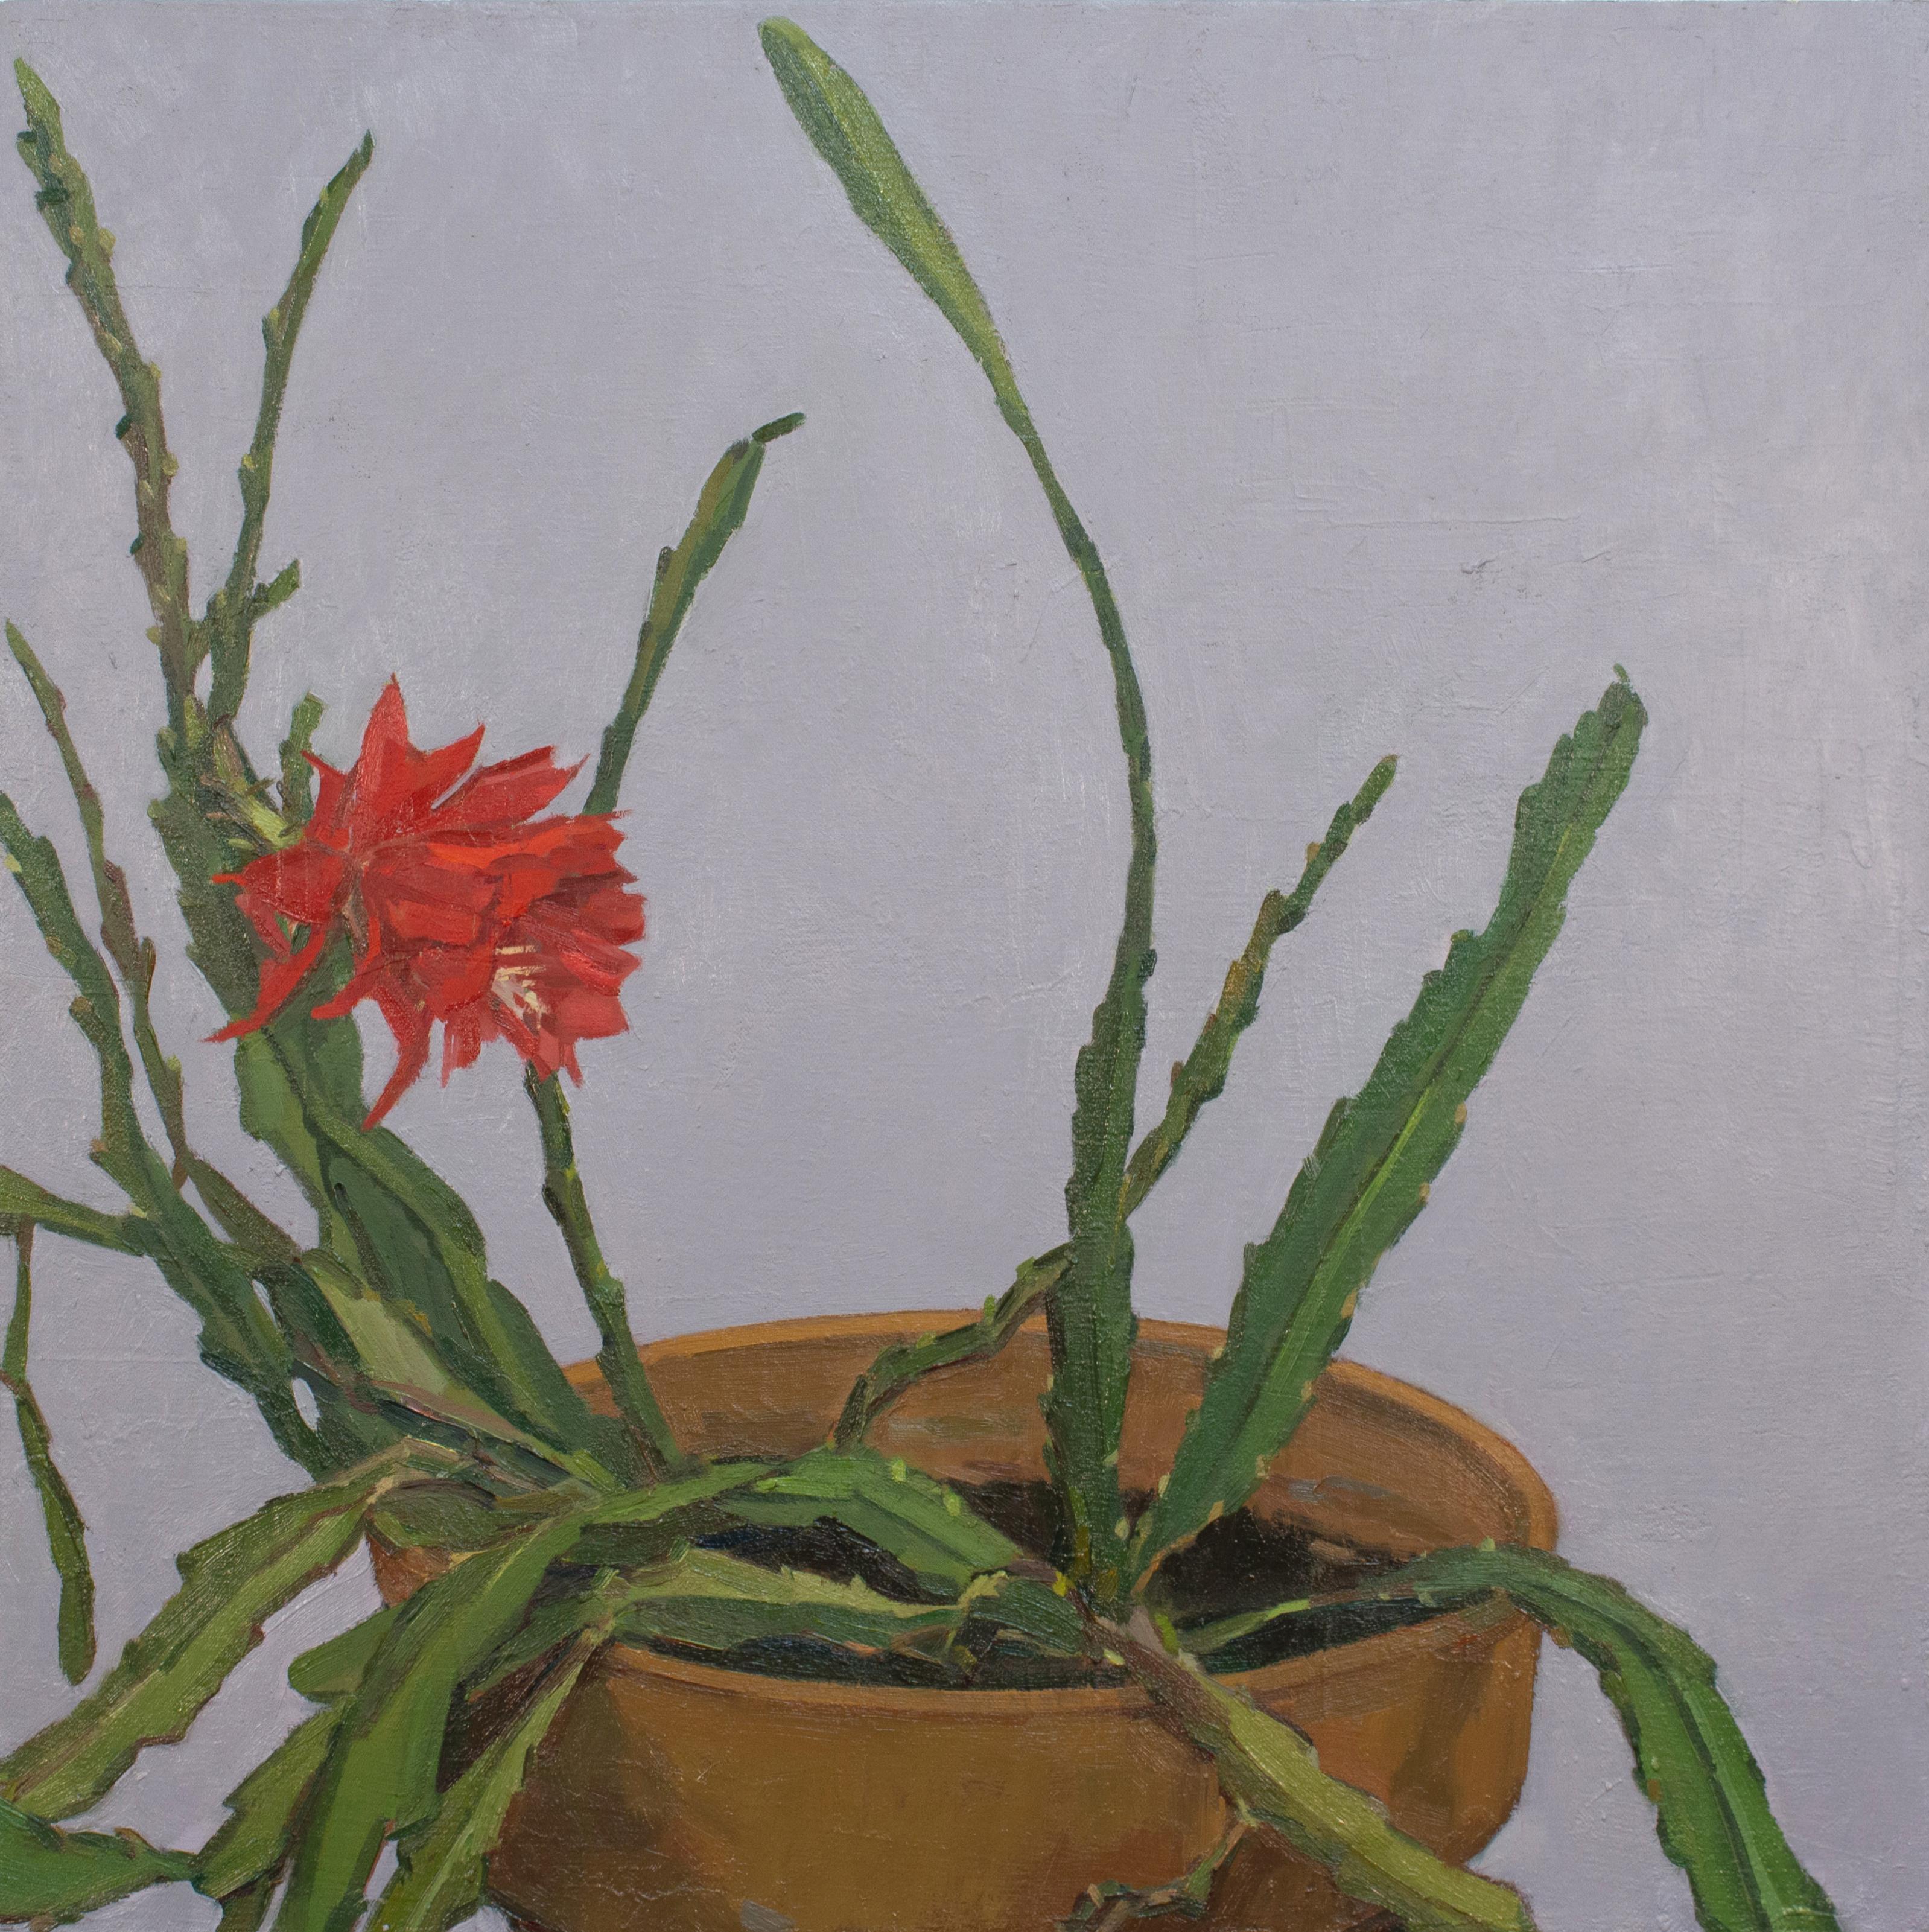 Abstract Painting Christina Renfer Vogel - « Studio Bloom » - nature morte - florale, botanique, naturalisme, pop of red